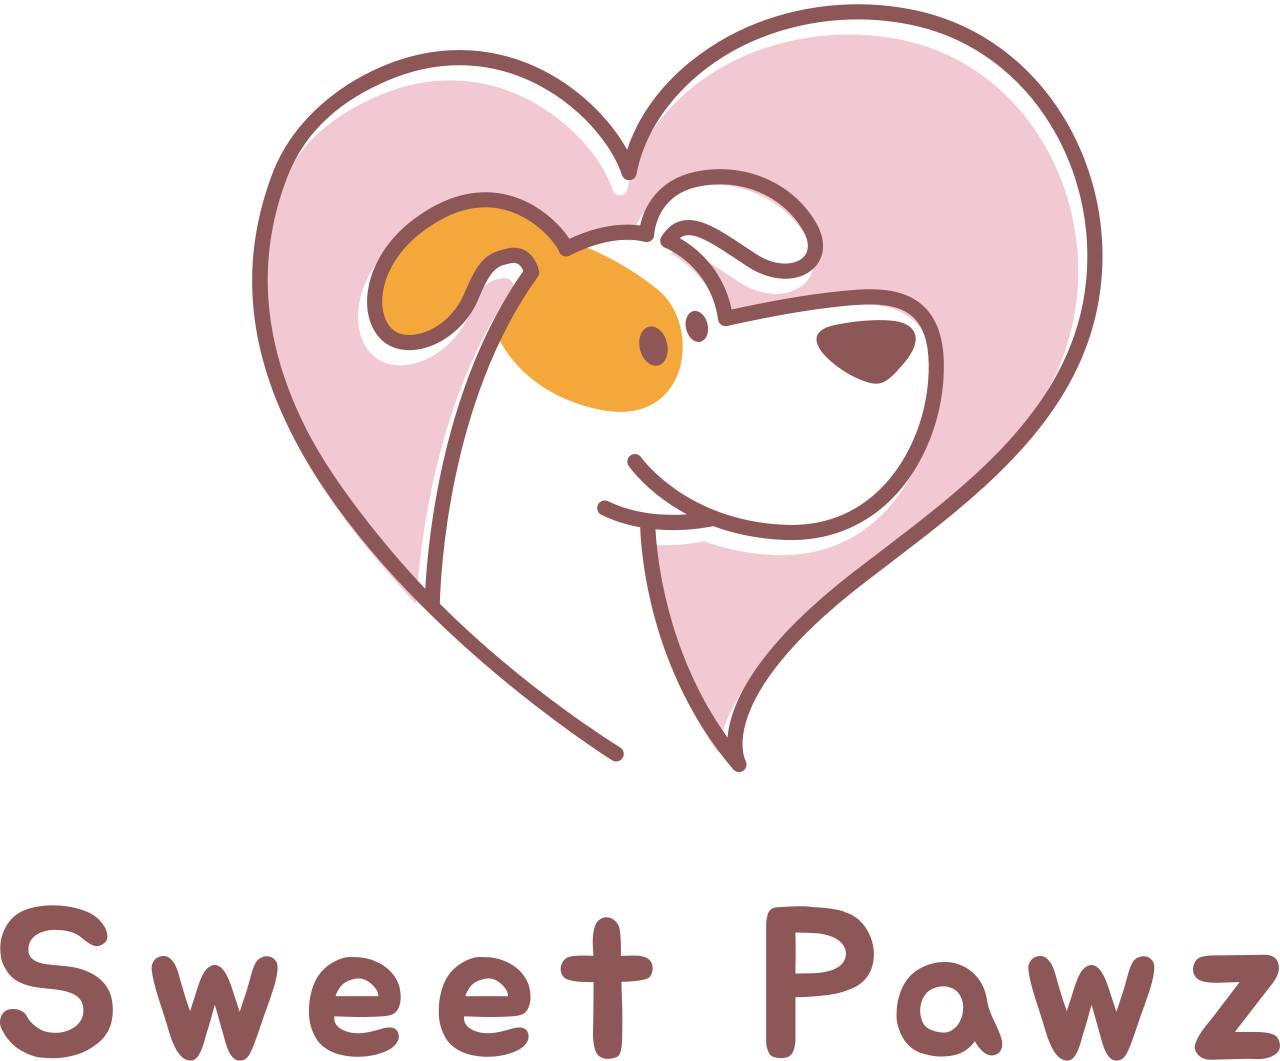 Sweet Pawz 's logo